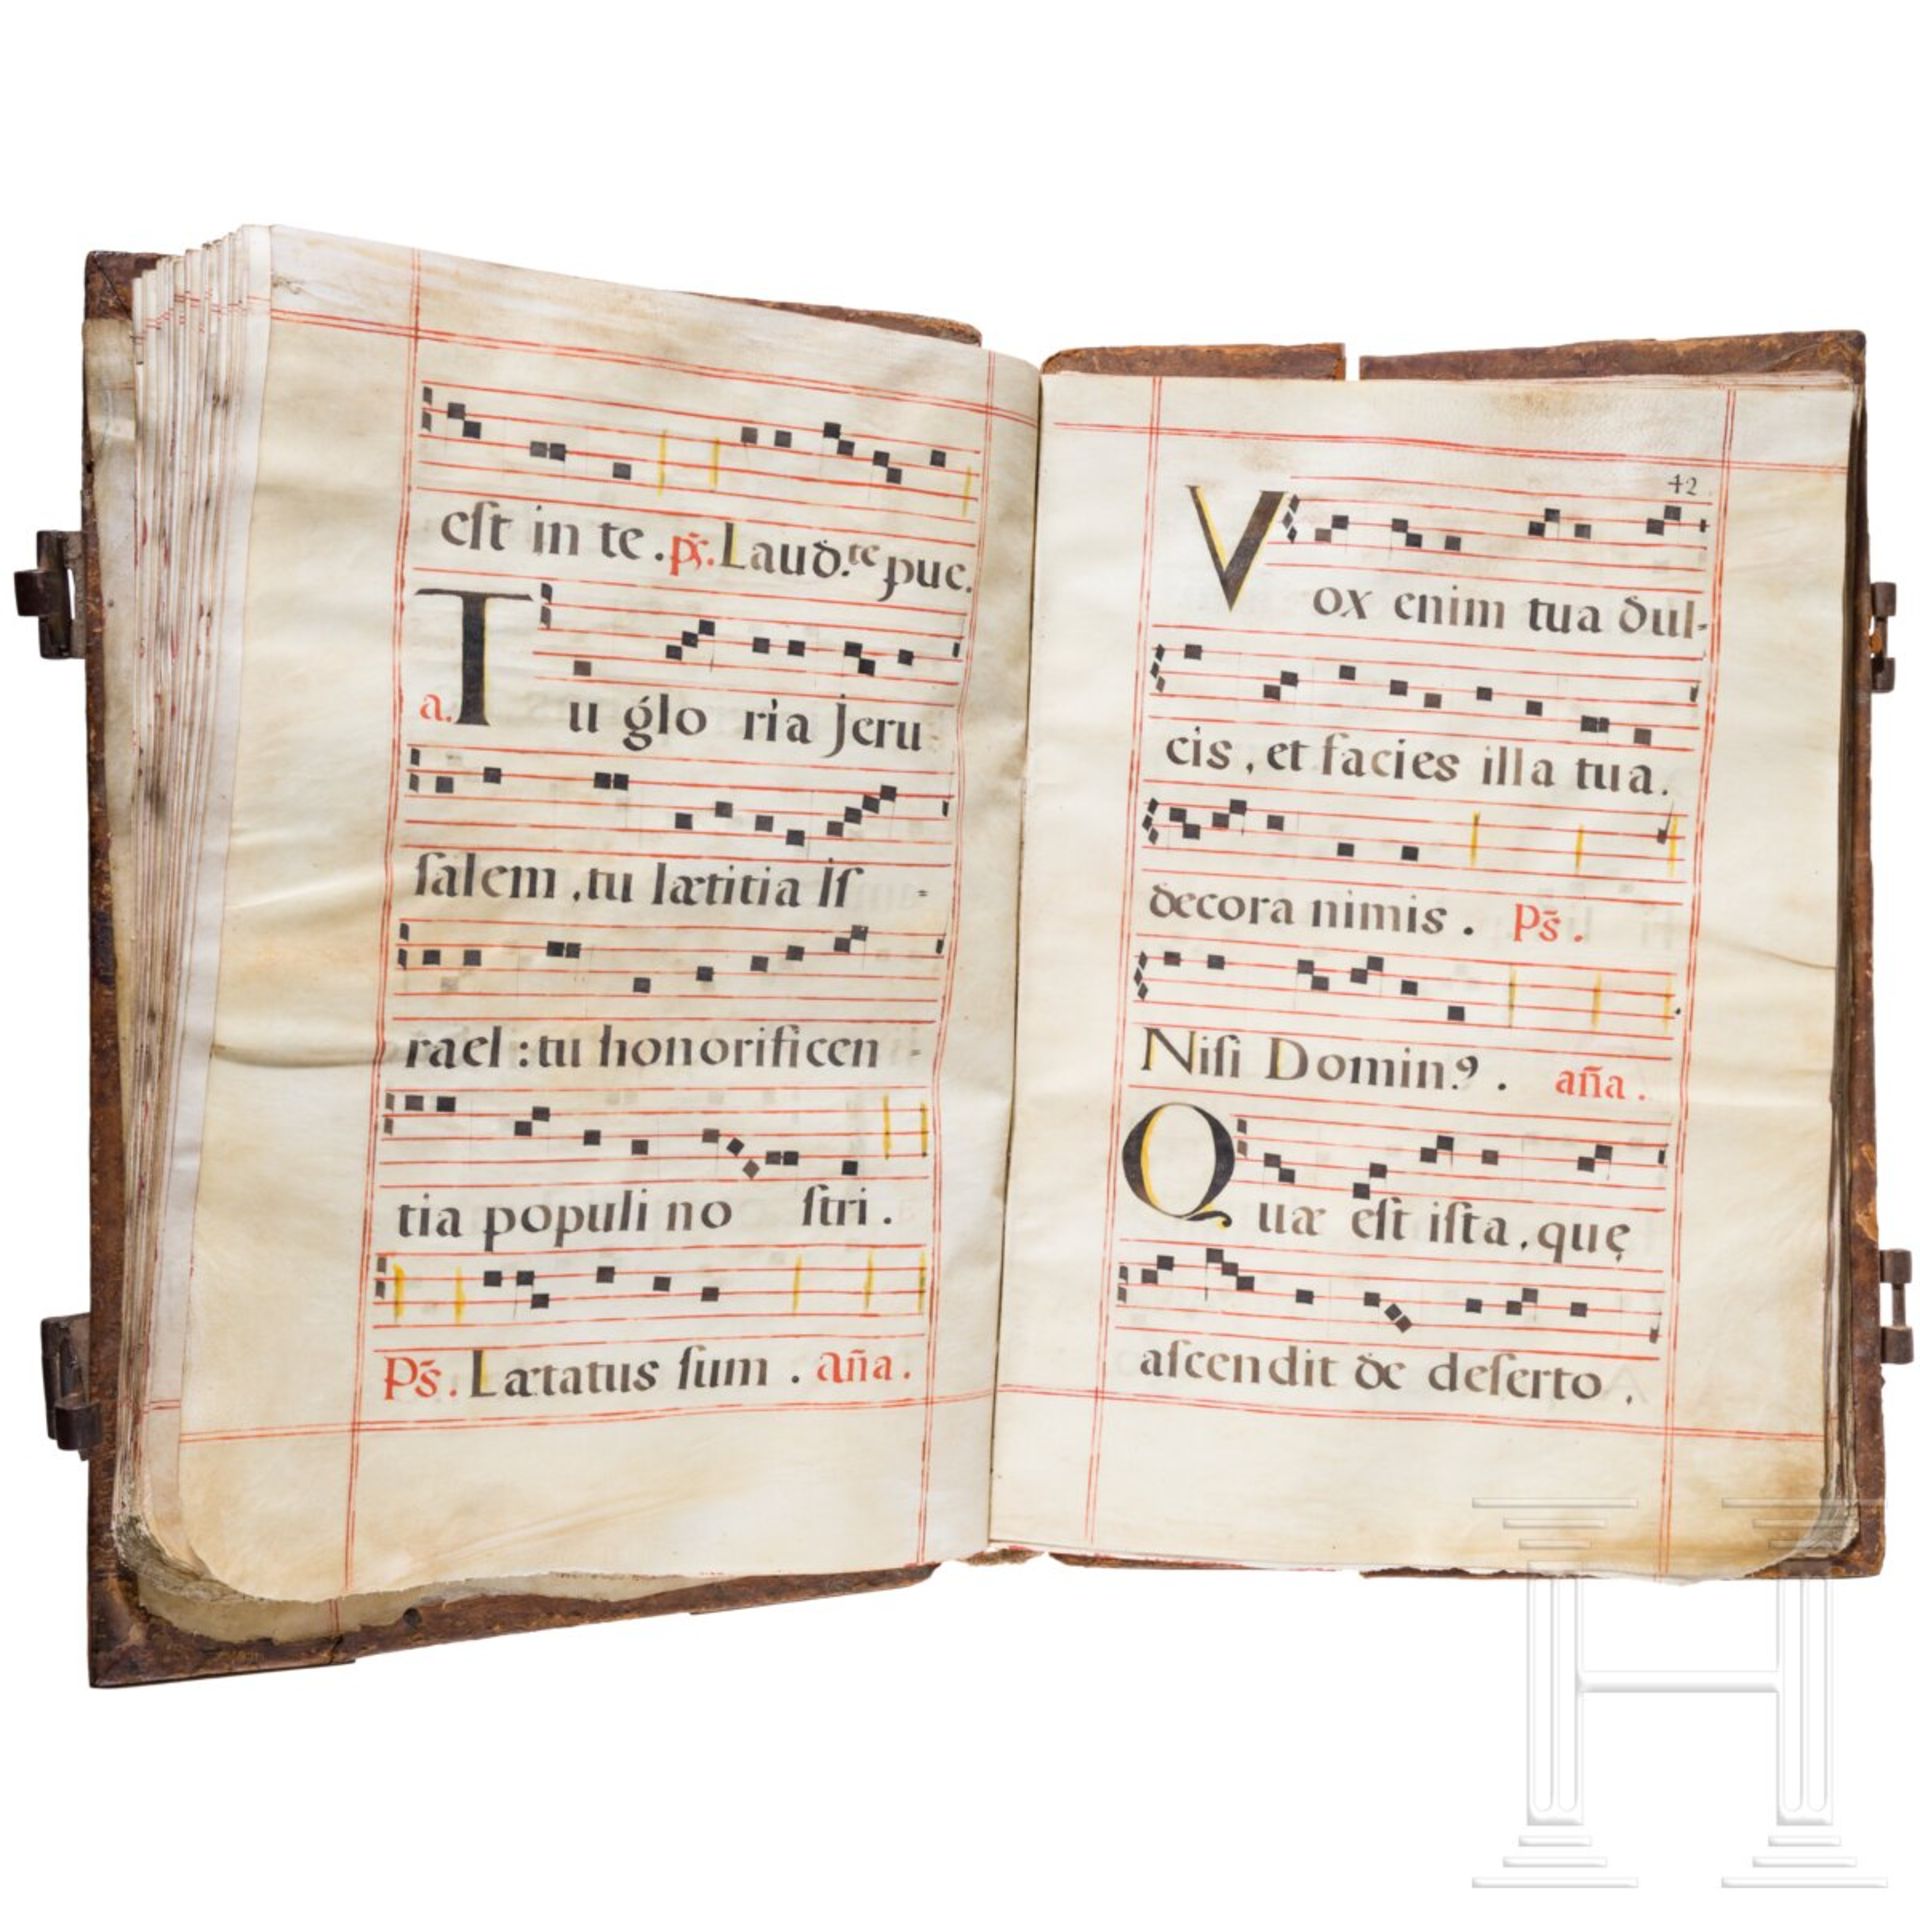 Missale Romanum, Handschrift auf Pergament, Spanien, 16./17. Jhdt. - Image 3 of 6